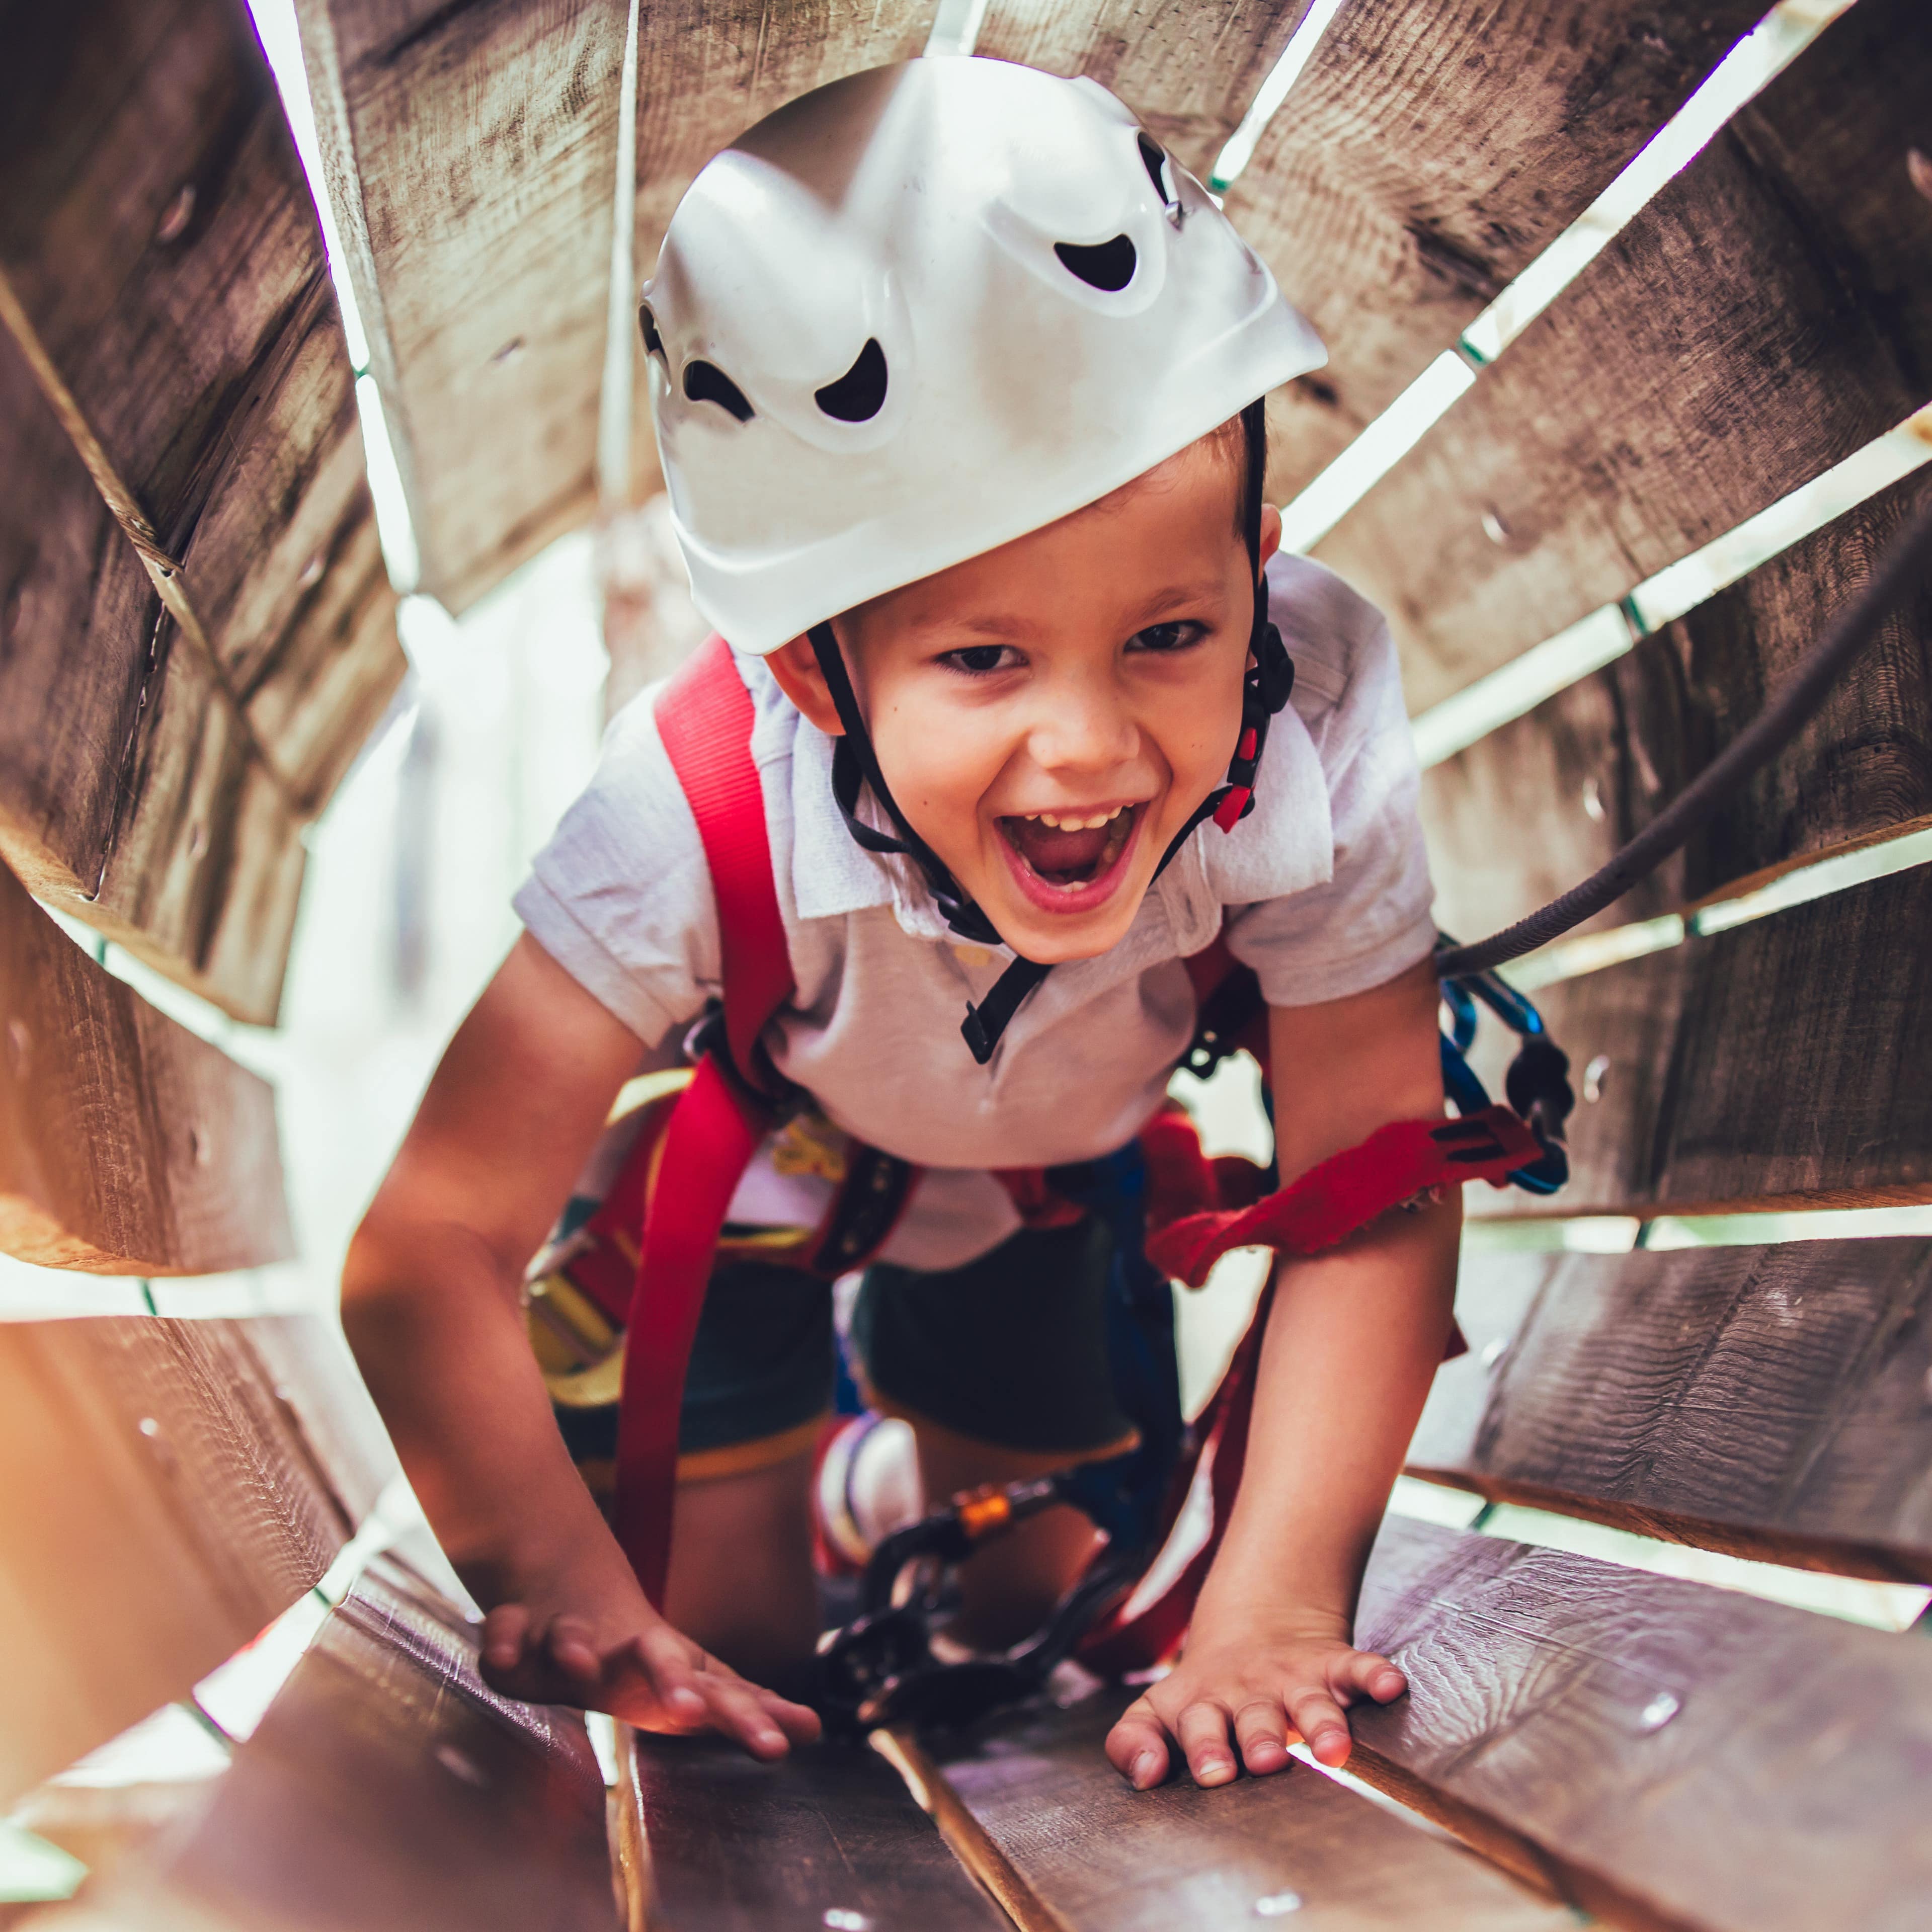 Ein Junge mit Kletterausrüstung und Helm krabbelt durch einen Holztunnel.